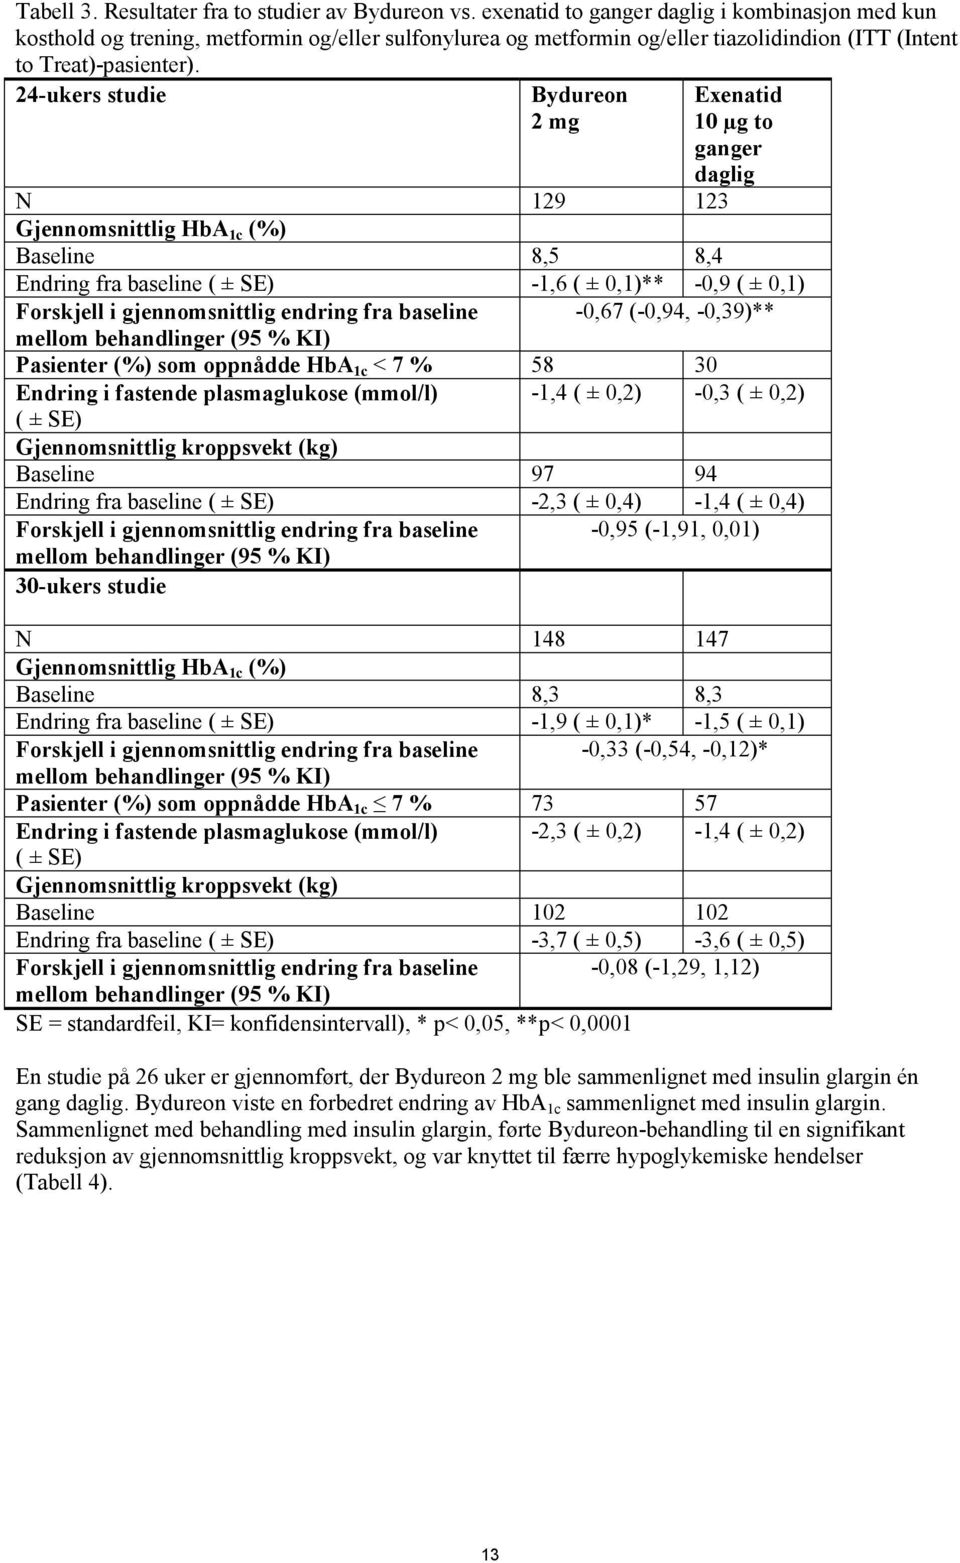 24-ukers studie Bydureon 2 mg Exenatid 10 µg to ganger daglig N 129 123 Gjennomsnittlig HbA 1c (%) Baseline 8,5 8,4 Endring fra baseline ( ± SE) -1,6 ( ± 0,1)** -0,9 ( ± 0,1) Forskjell i